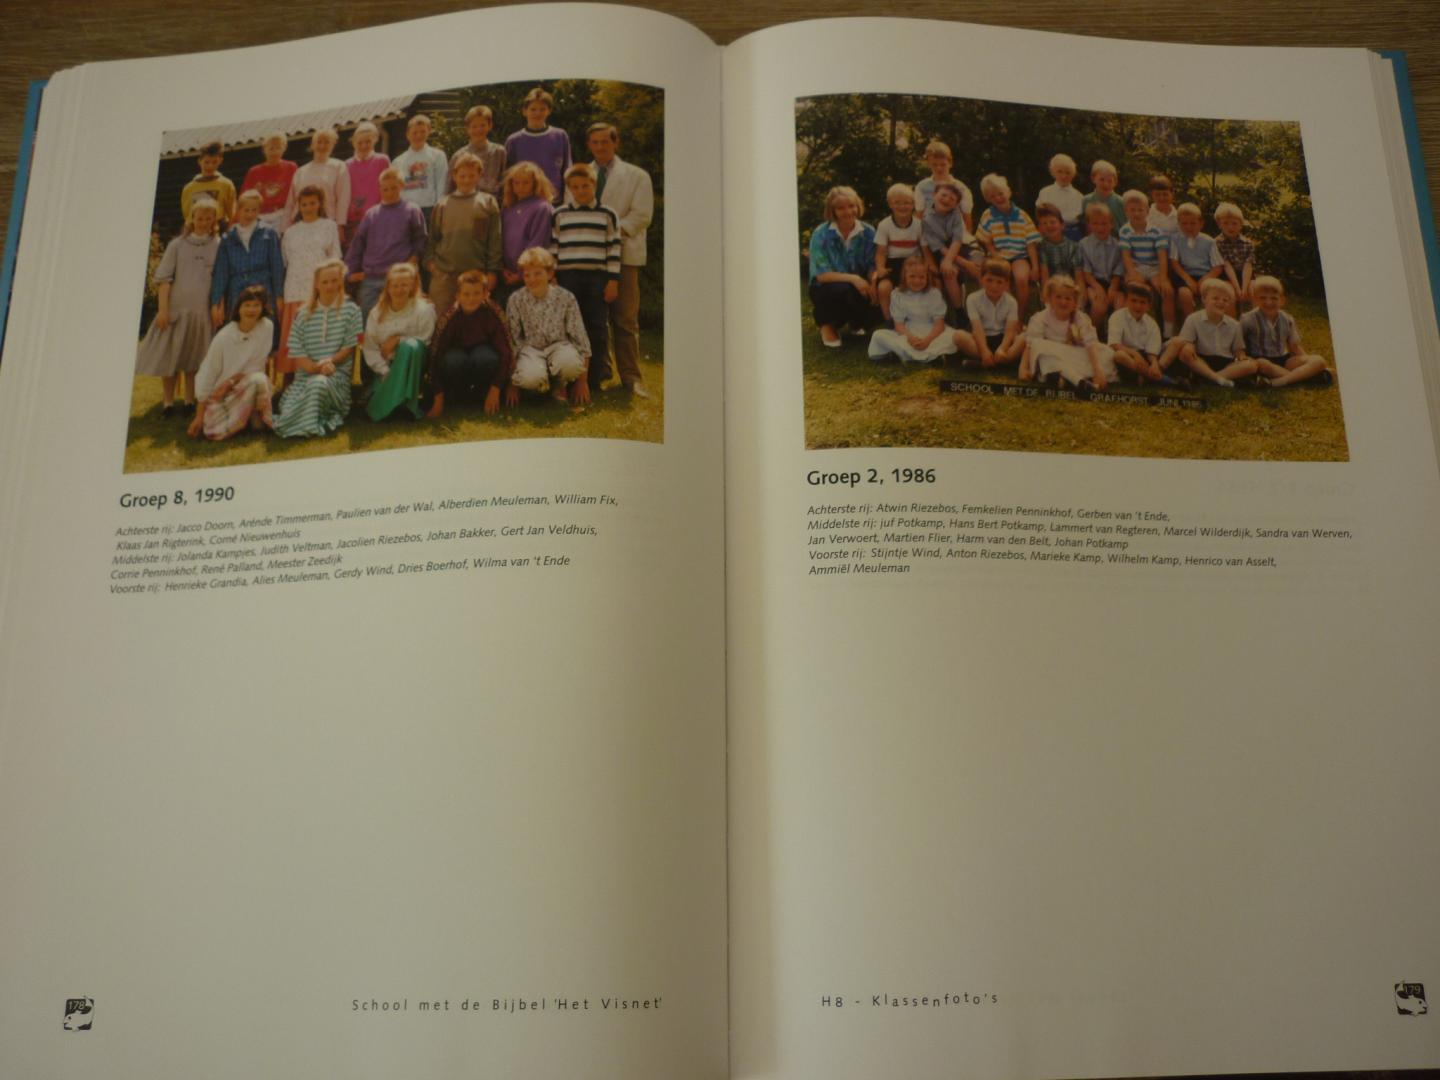 Limburg, H.K. e.a. - 50 jaar School met de Bijbel "Het Visnet" - Grafhorst 1952 - 2002